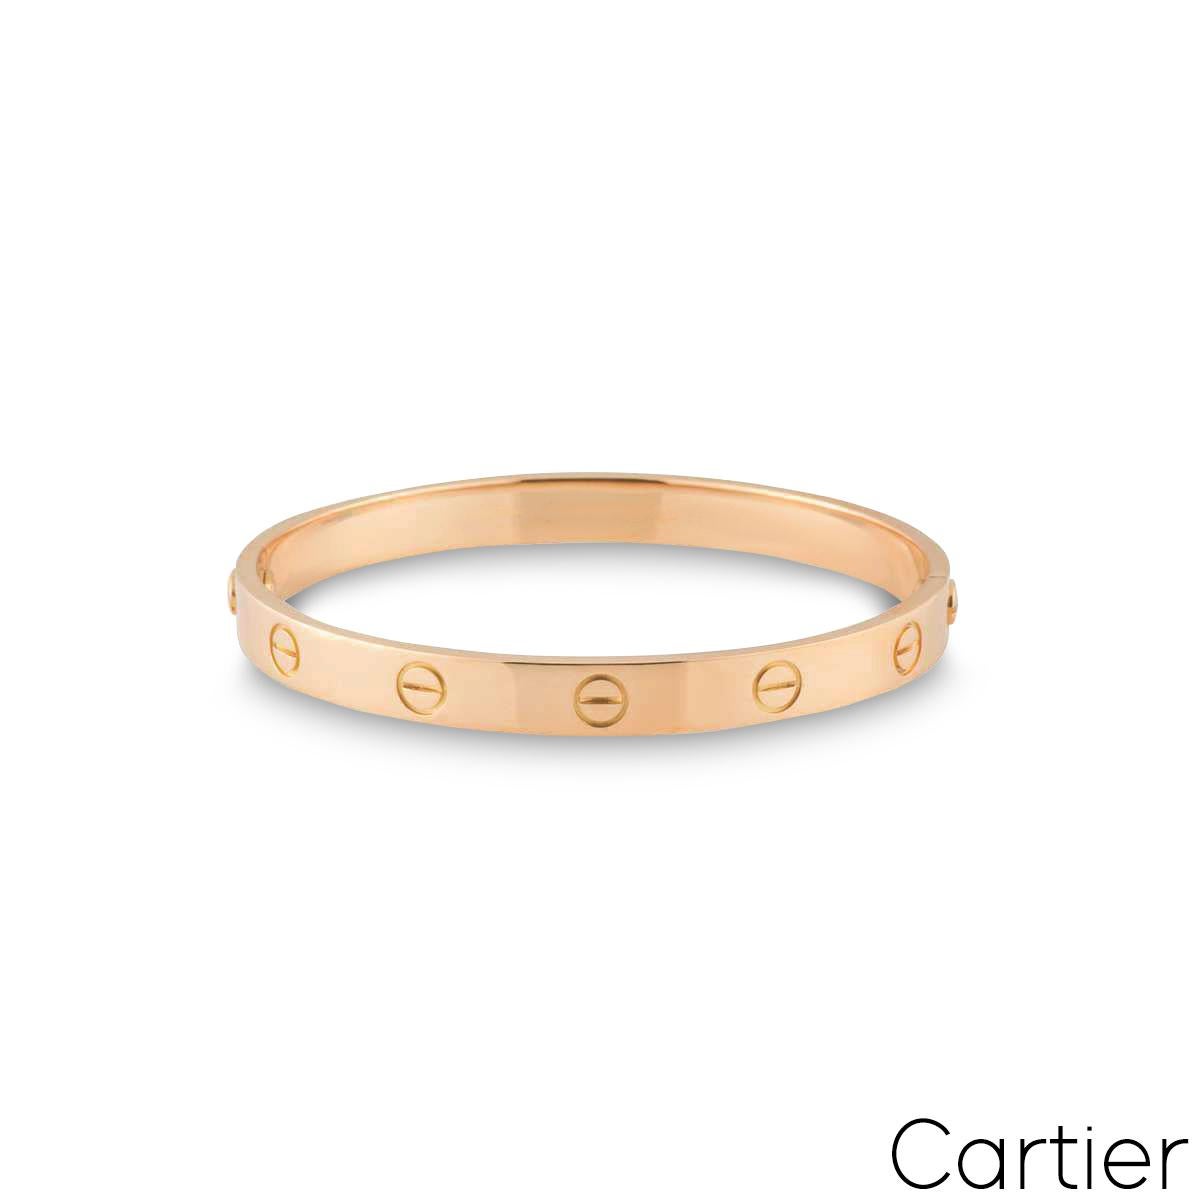 Un bracelet iconique de Cartier en or rose 18 carats de la collection Love. Le bracelet comporte les motifs emblématiques de la vis sur le pourtour extérieur. De taille 20, doté de l'ancien système à vis, ce bracelet a un poids brut de 35,50